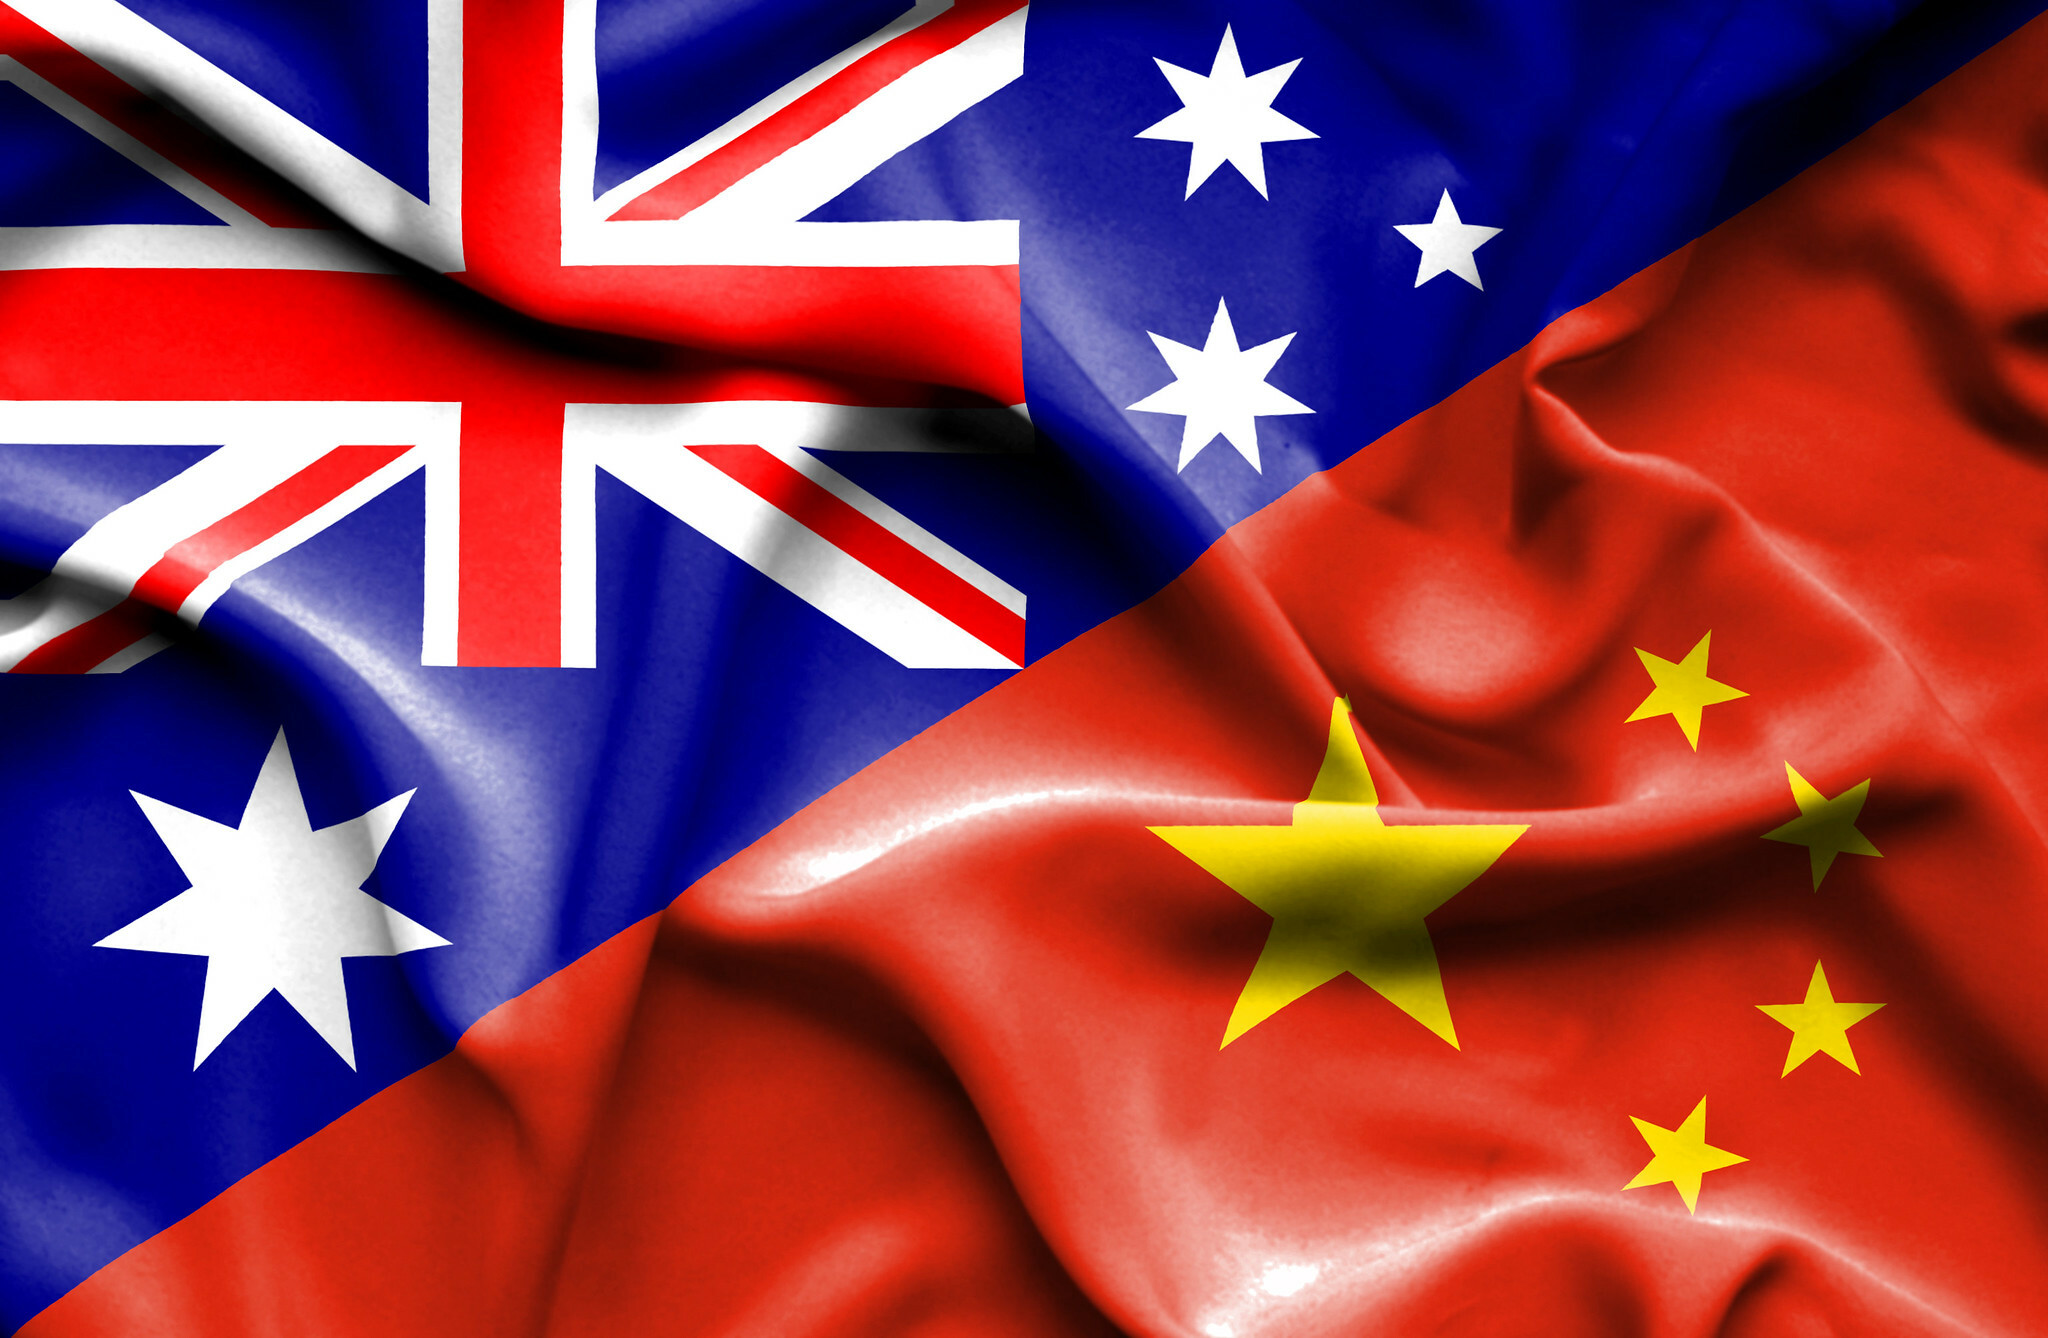 Mối quan hệ thương mại nông nghiệp giữa Úc, Trung Quốc và Việt Nam đang ngày càng phát triển, đem lại những lợi ích kinh tế và môi trường cho các quốc gia. Hãy cùng xem hình ảnh về những sản phẩm nông nghiệp độc đáo và chất lượng cao được trao đổi giữa ba quốc gia.